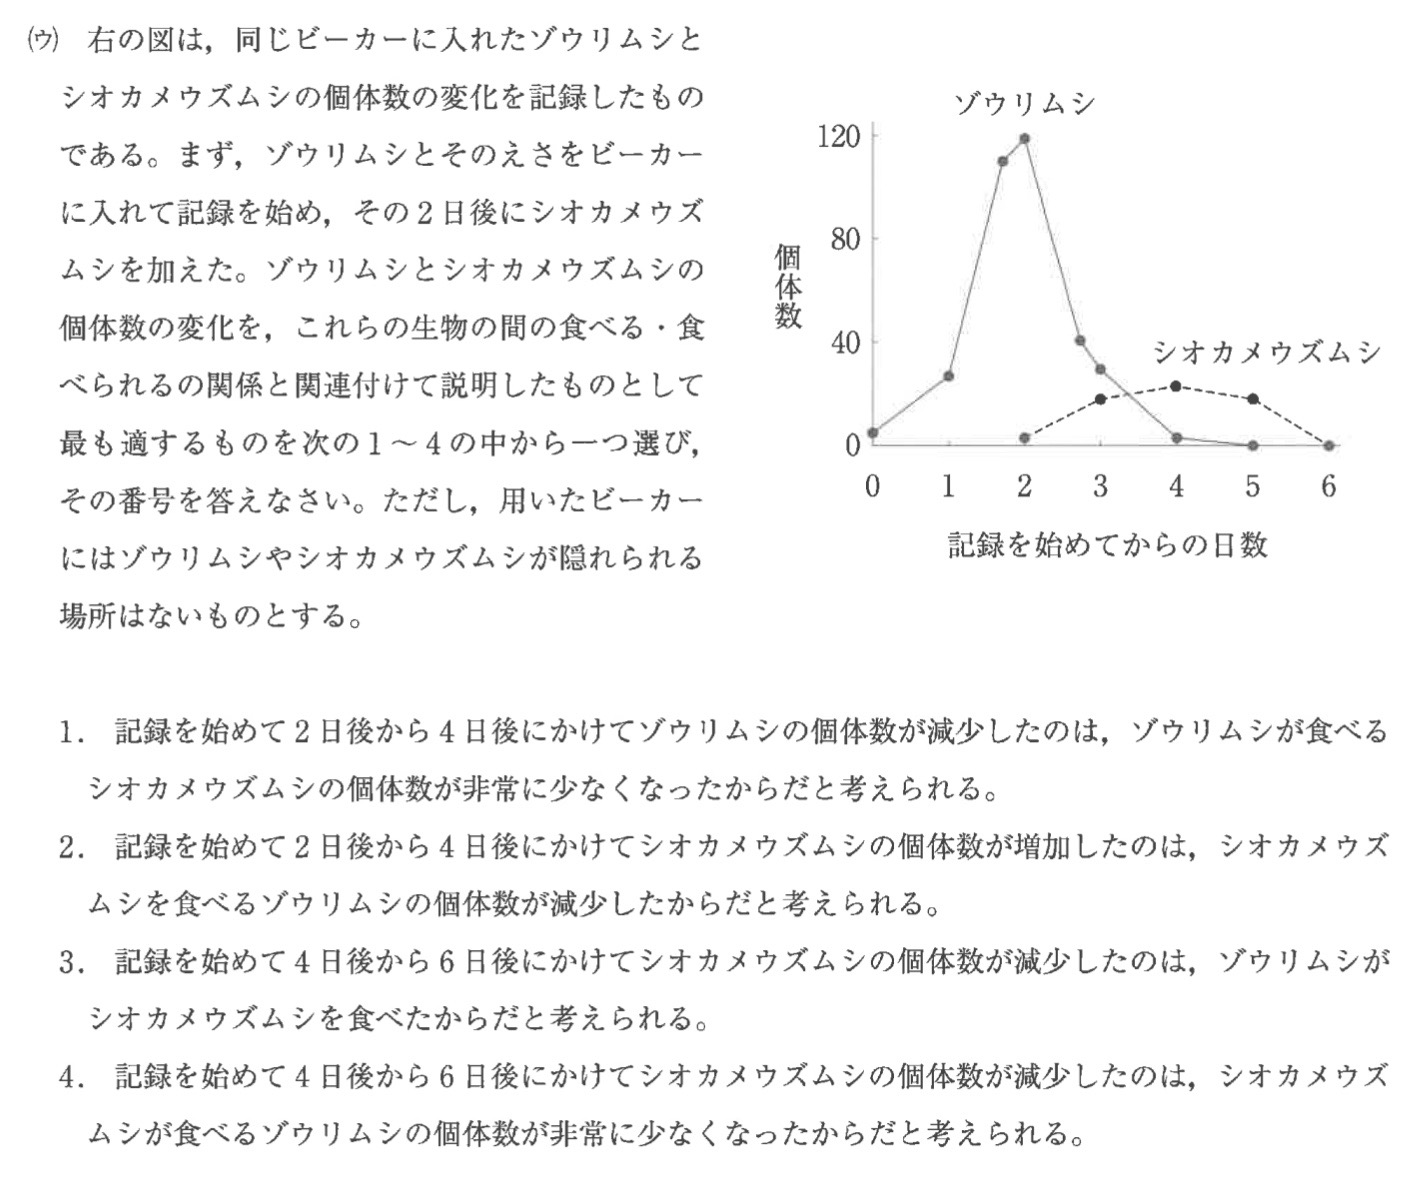 神奈川県公立高校入試理科2022年(令和4年)過去問題